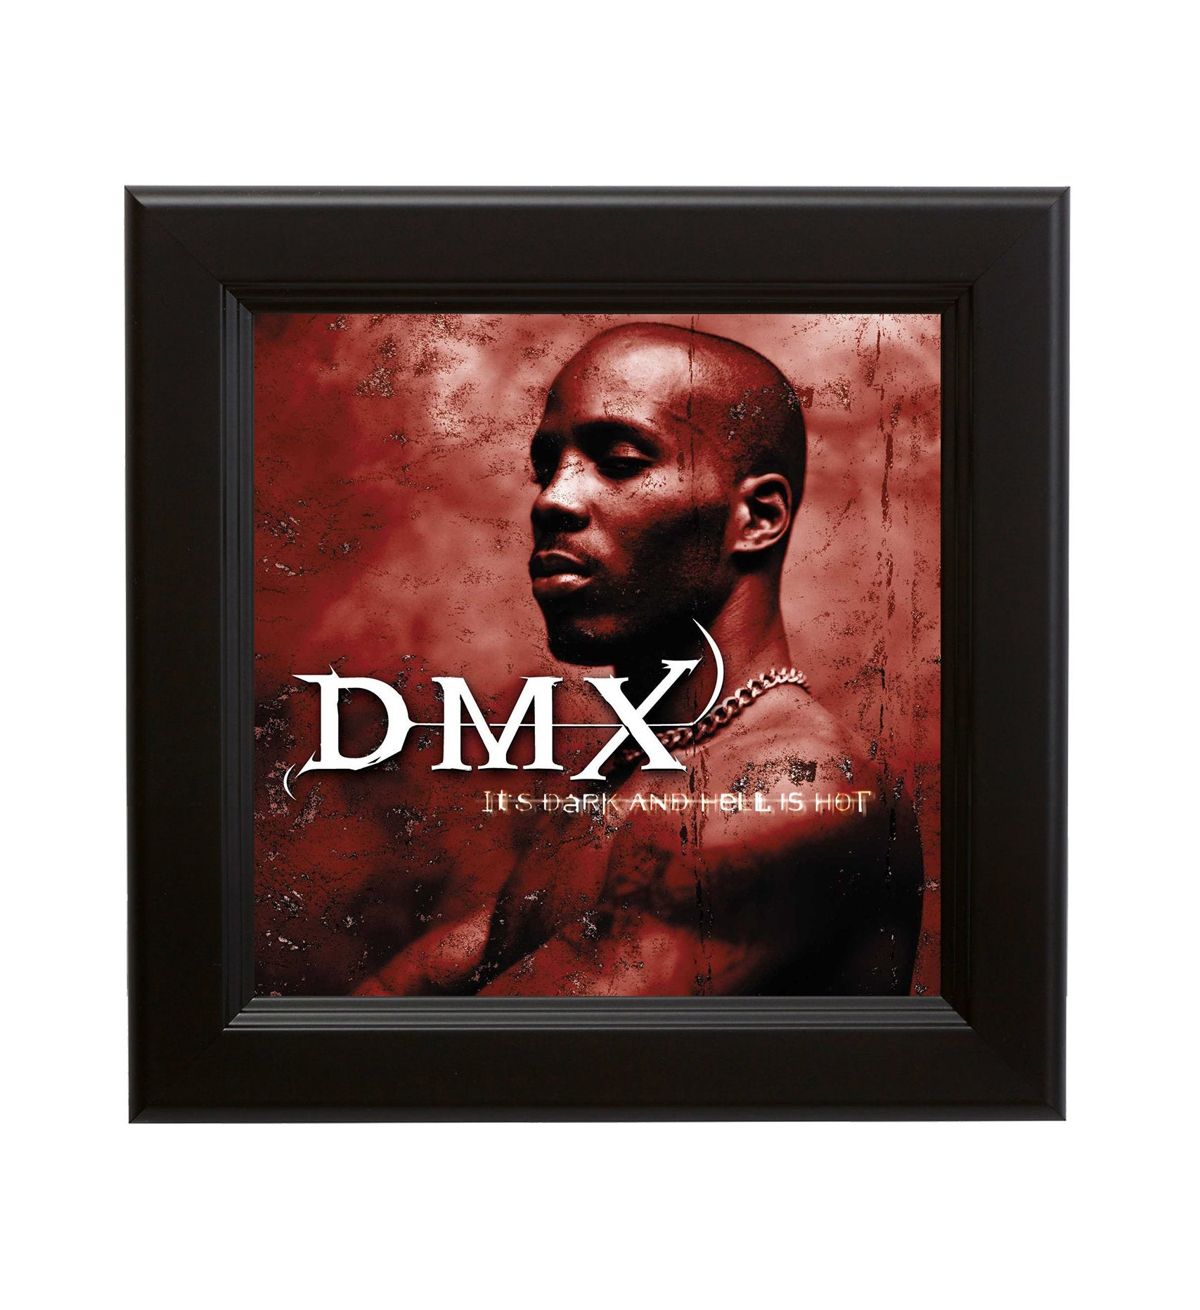 dmx all albums